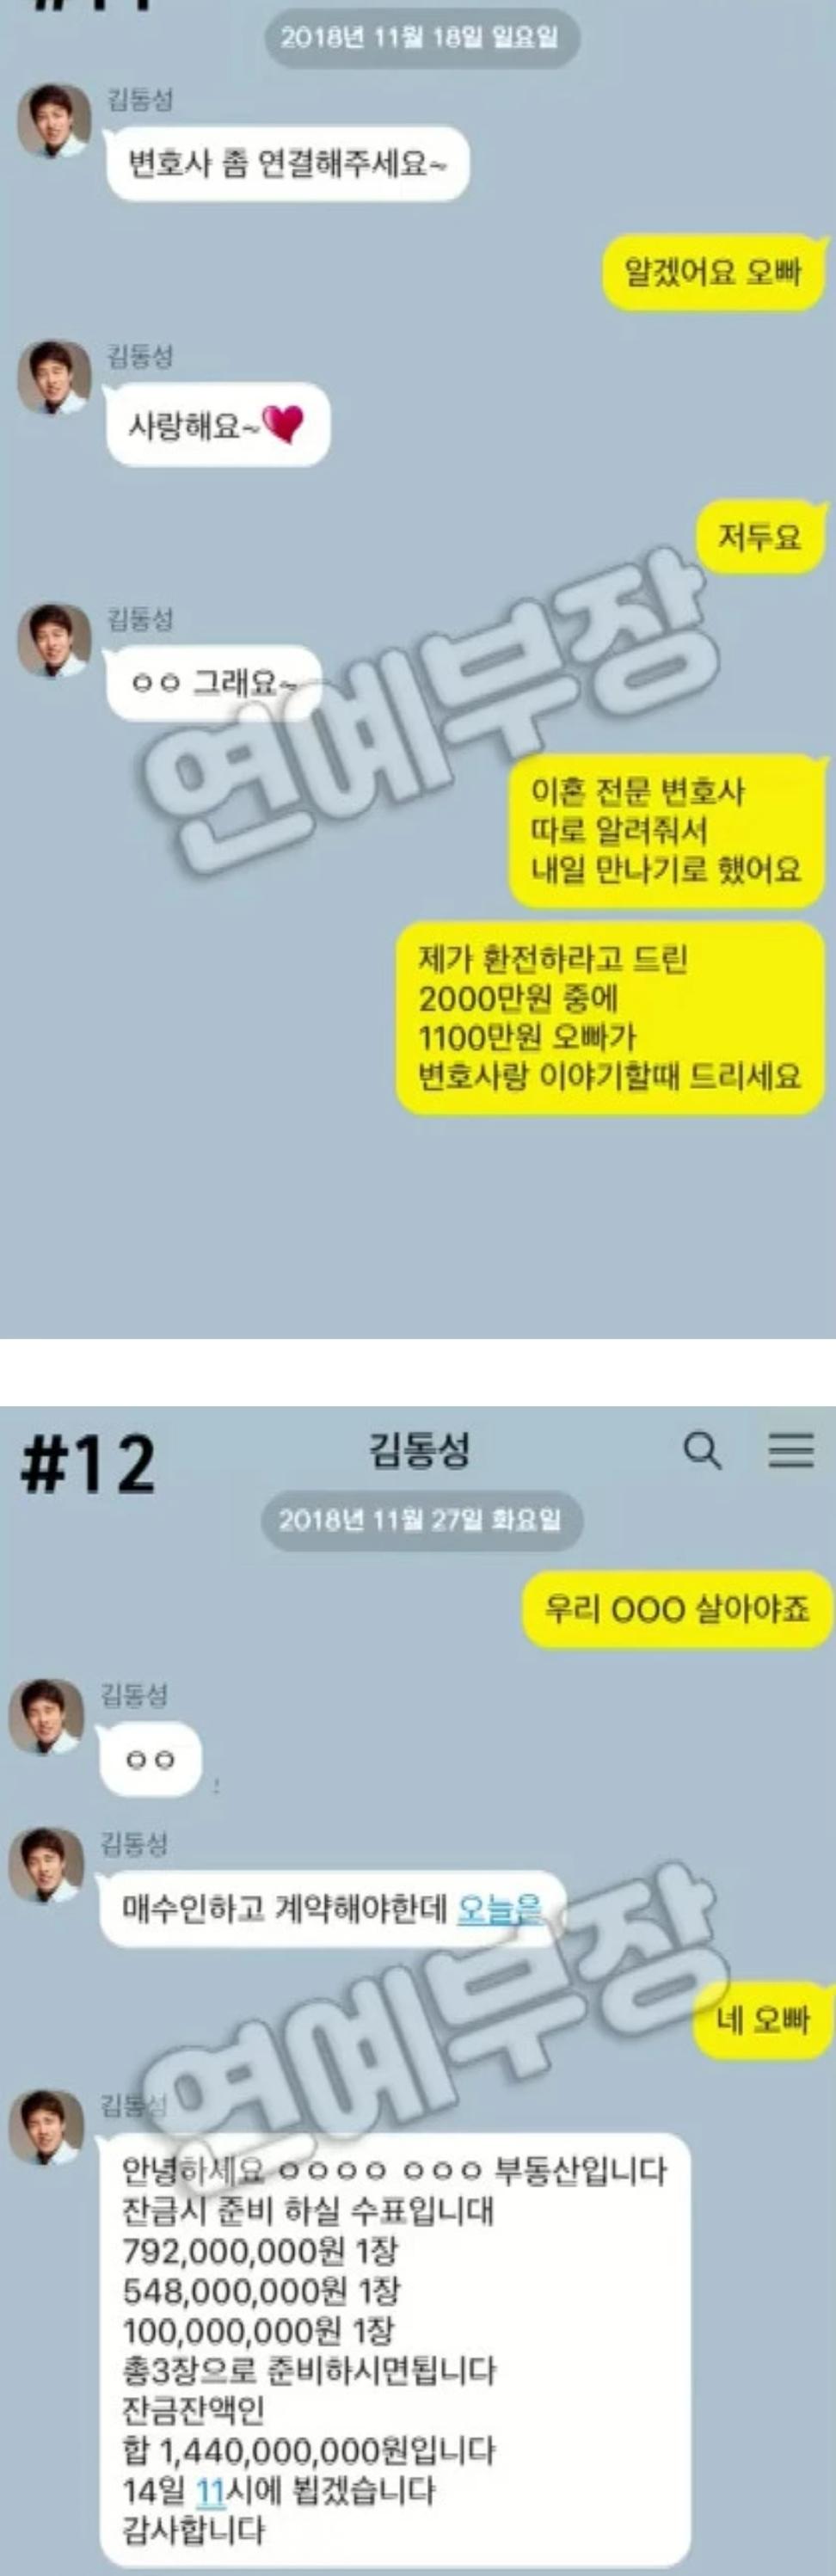 김동성이 내연녀와 나눈 카톡 - 유머/이슈판 - YULDO